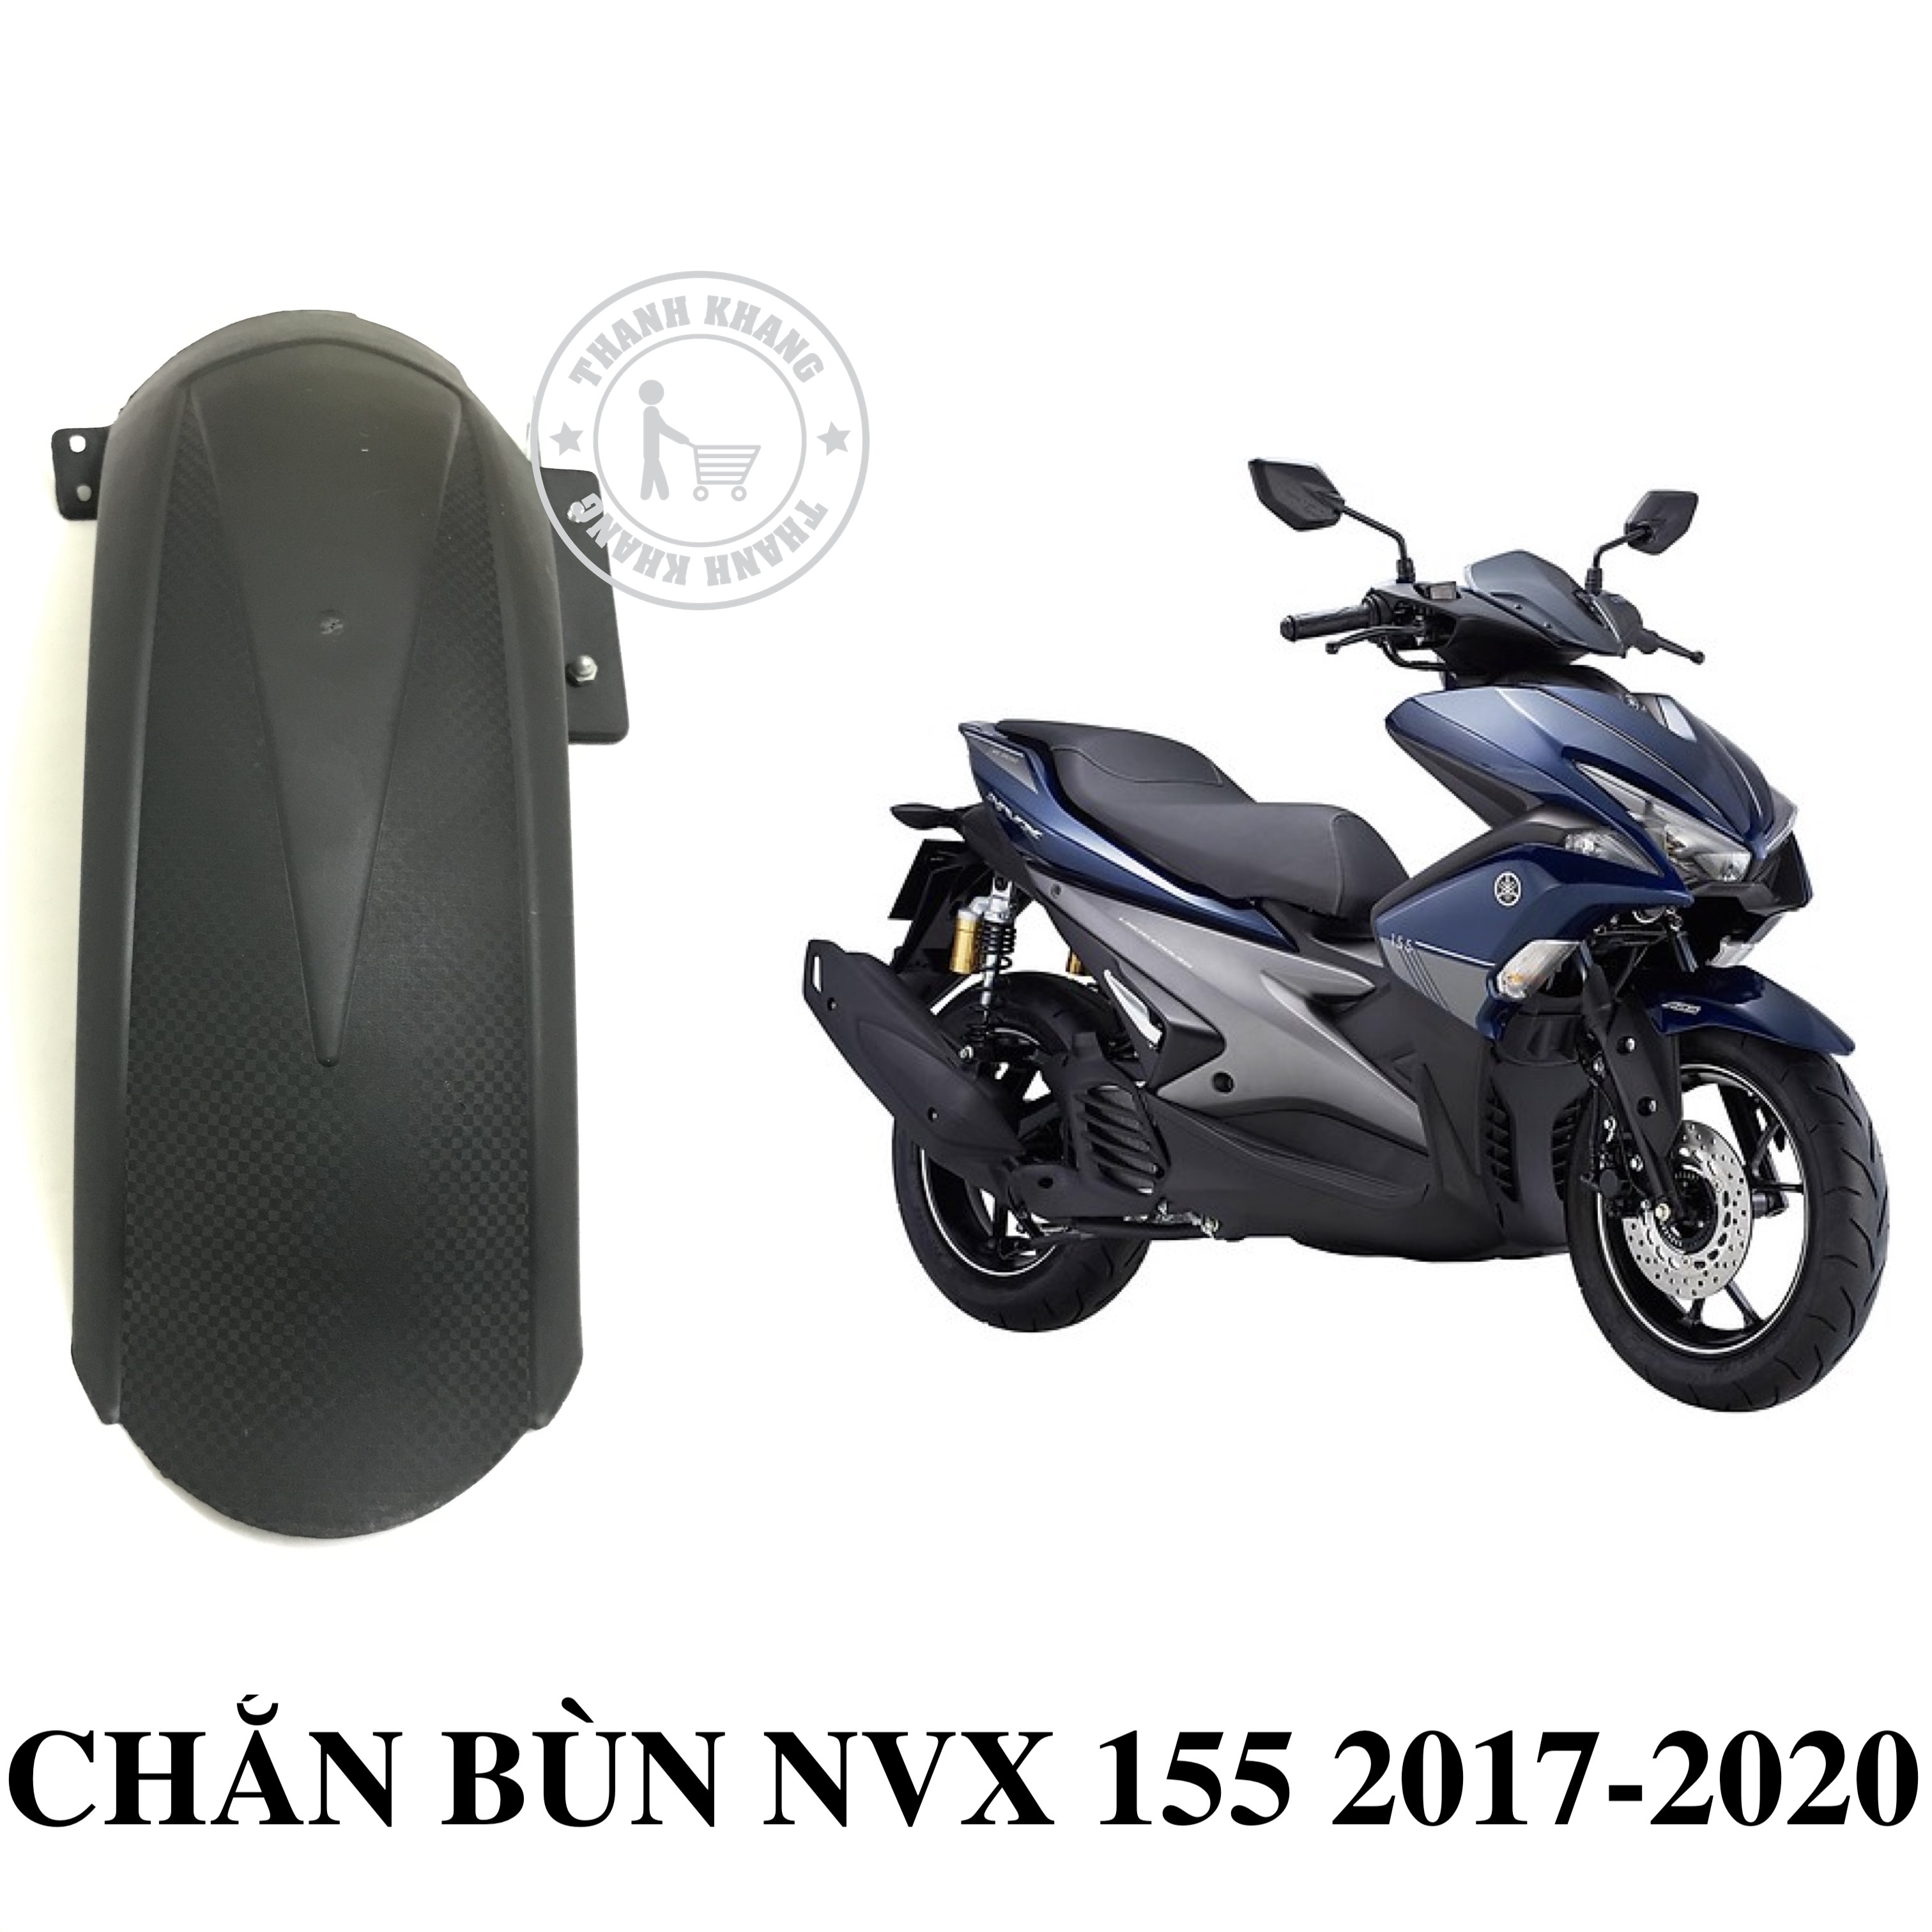 Yamaha NVX 155 2017 màu mới có giá bán 425 triệu đồng